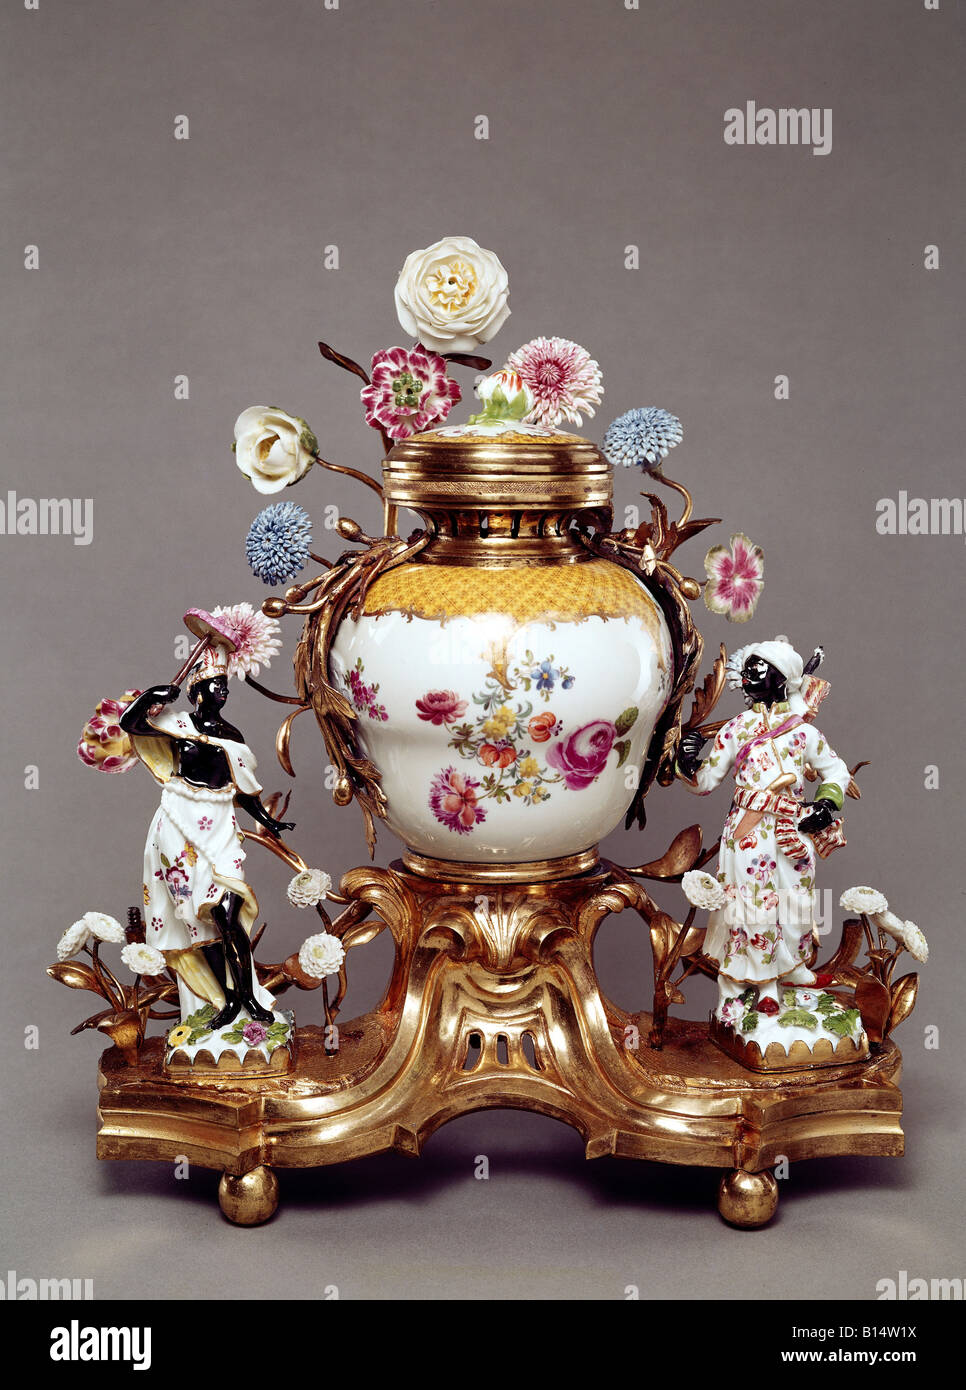 Belle arti, porcellana, Vaso con fiori e figure, Meissen, XVIII secolo, Bayerisches Nationalmuseum di Monaco di Baviera, artista del diritto d'autore non deve essere cancellata Foto Stock